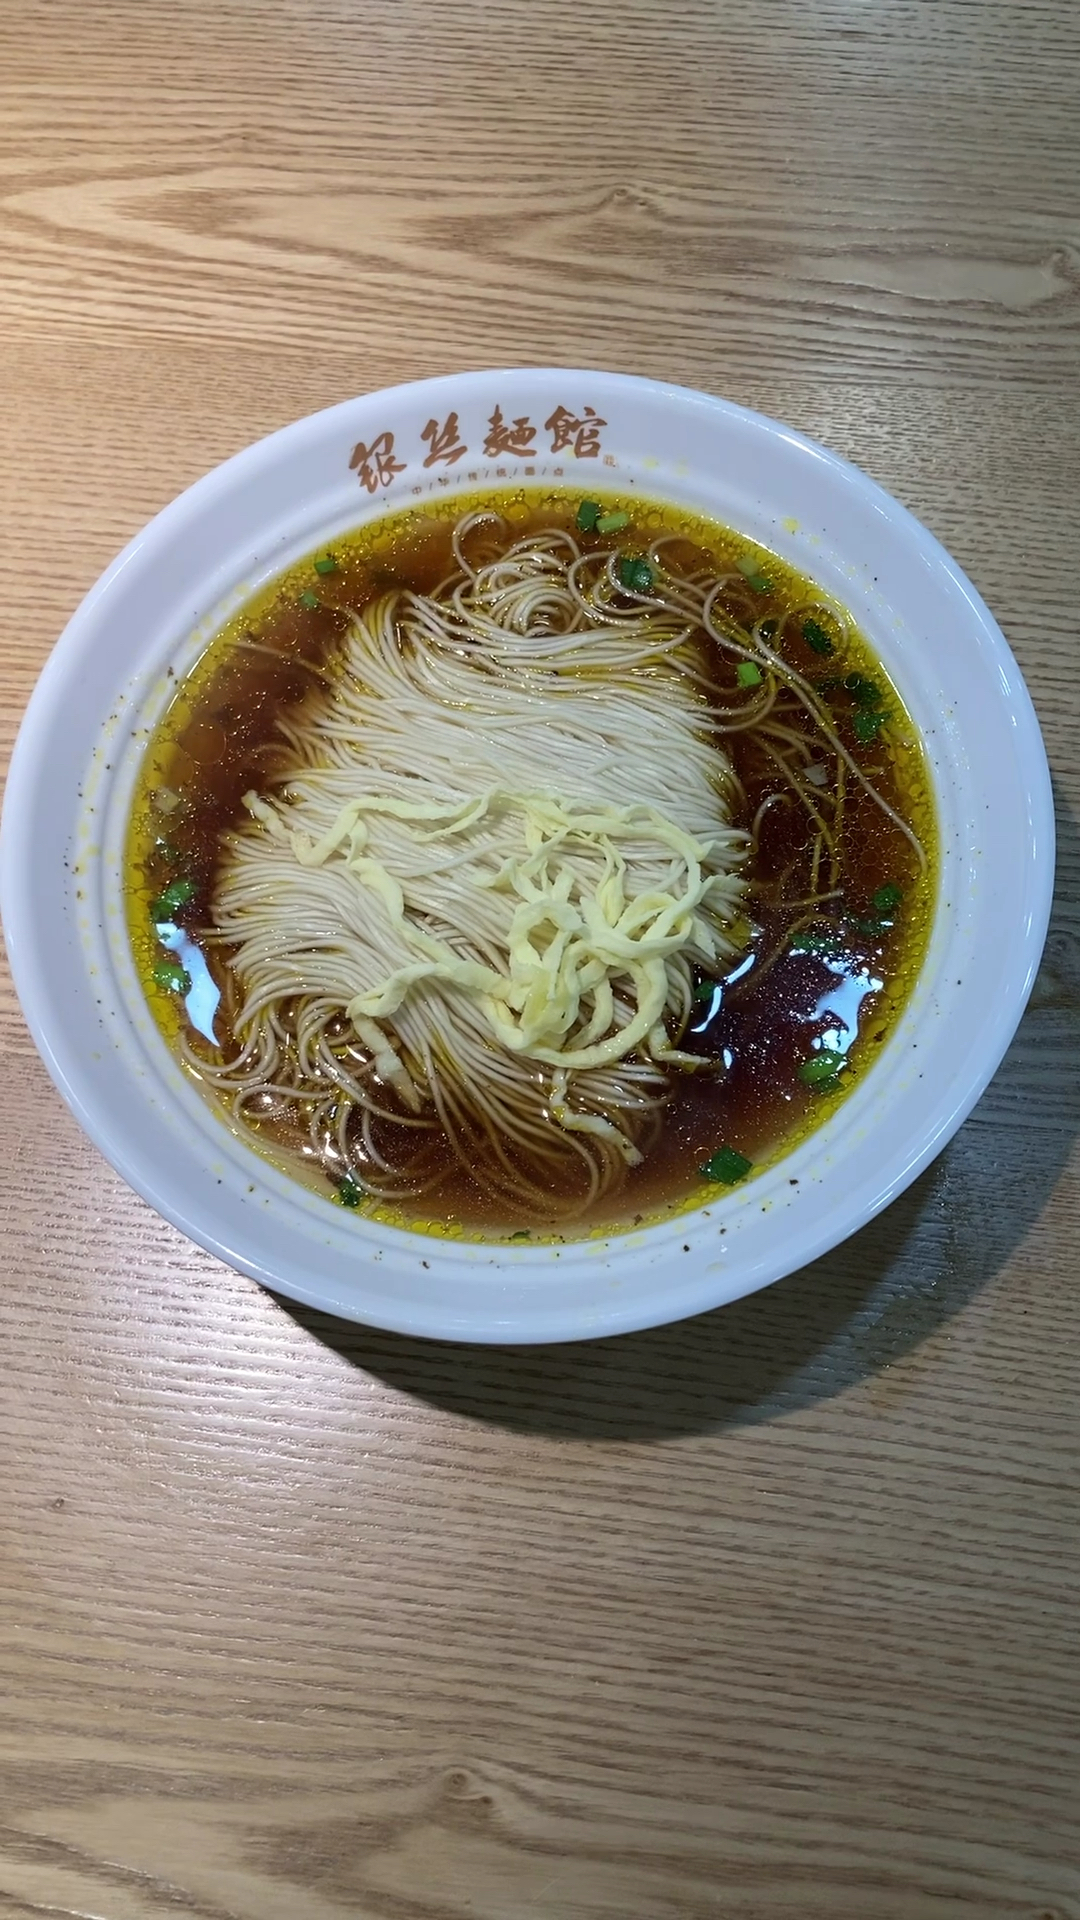 江南无数城,只为这碗鲜,江苏常州银丝面分白汤红汤两种